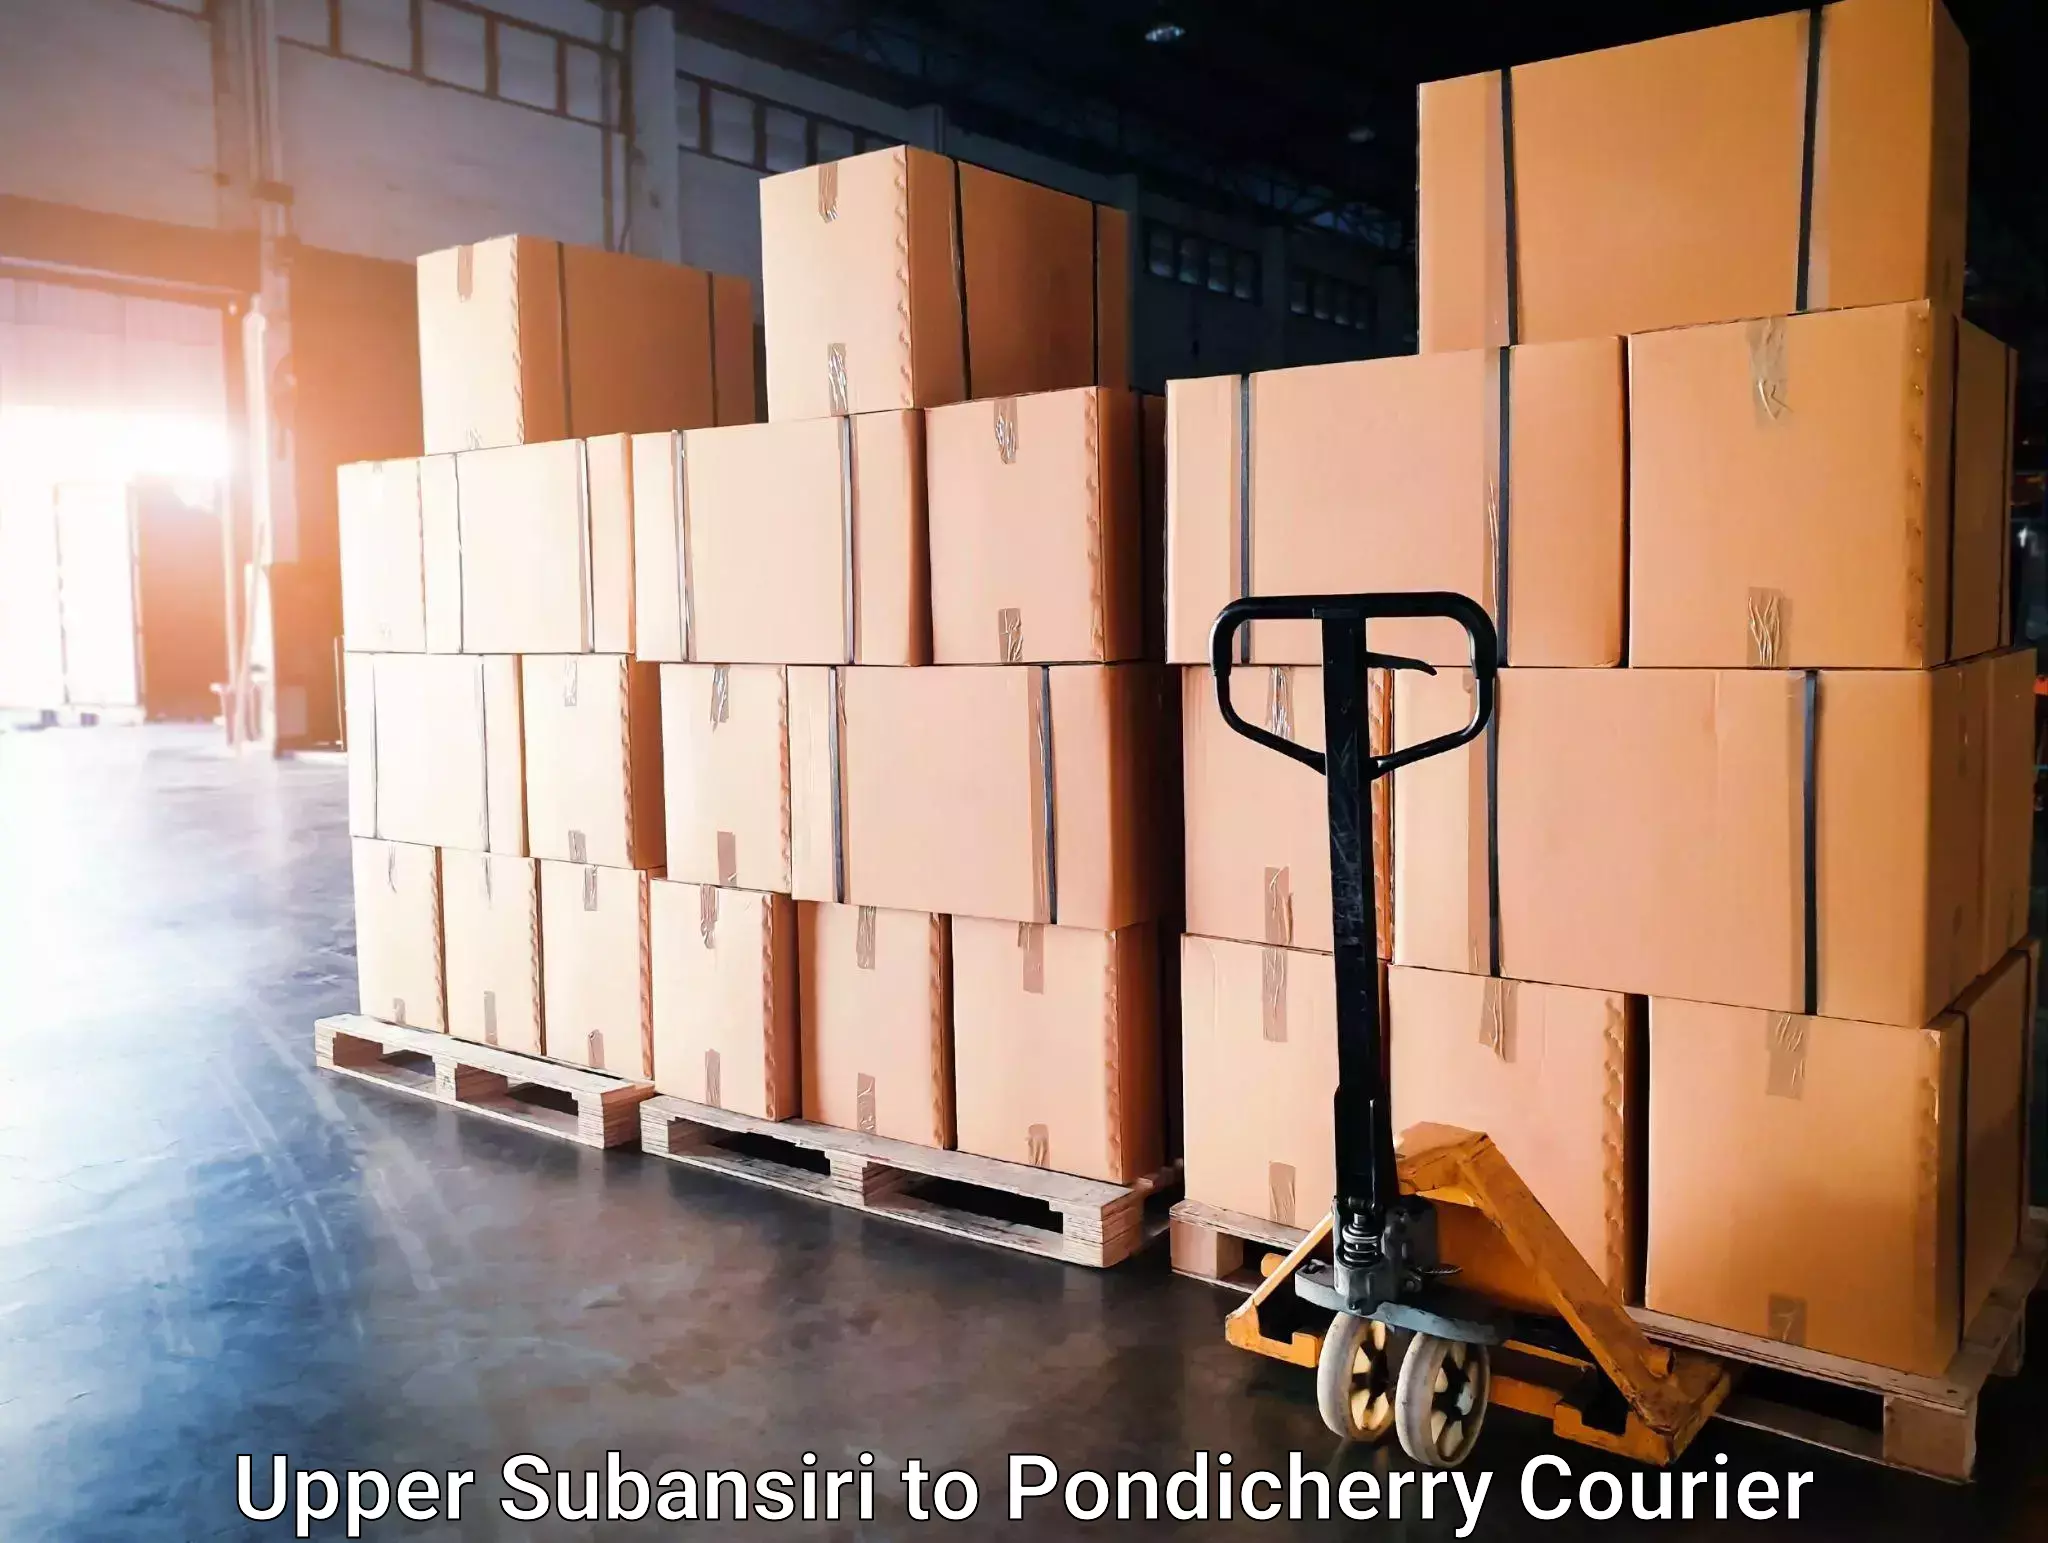 Weekend courier service Upper Subansiri to Pondicherry